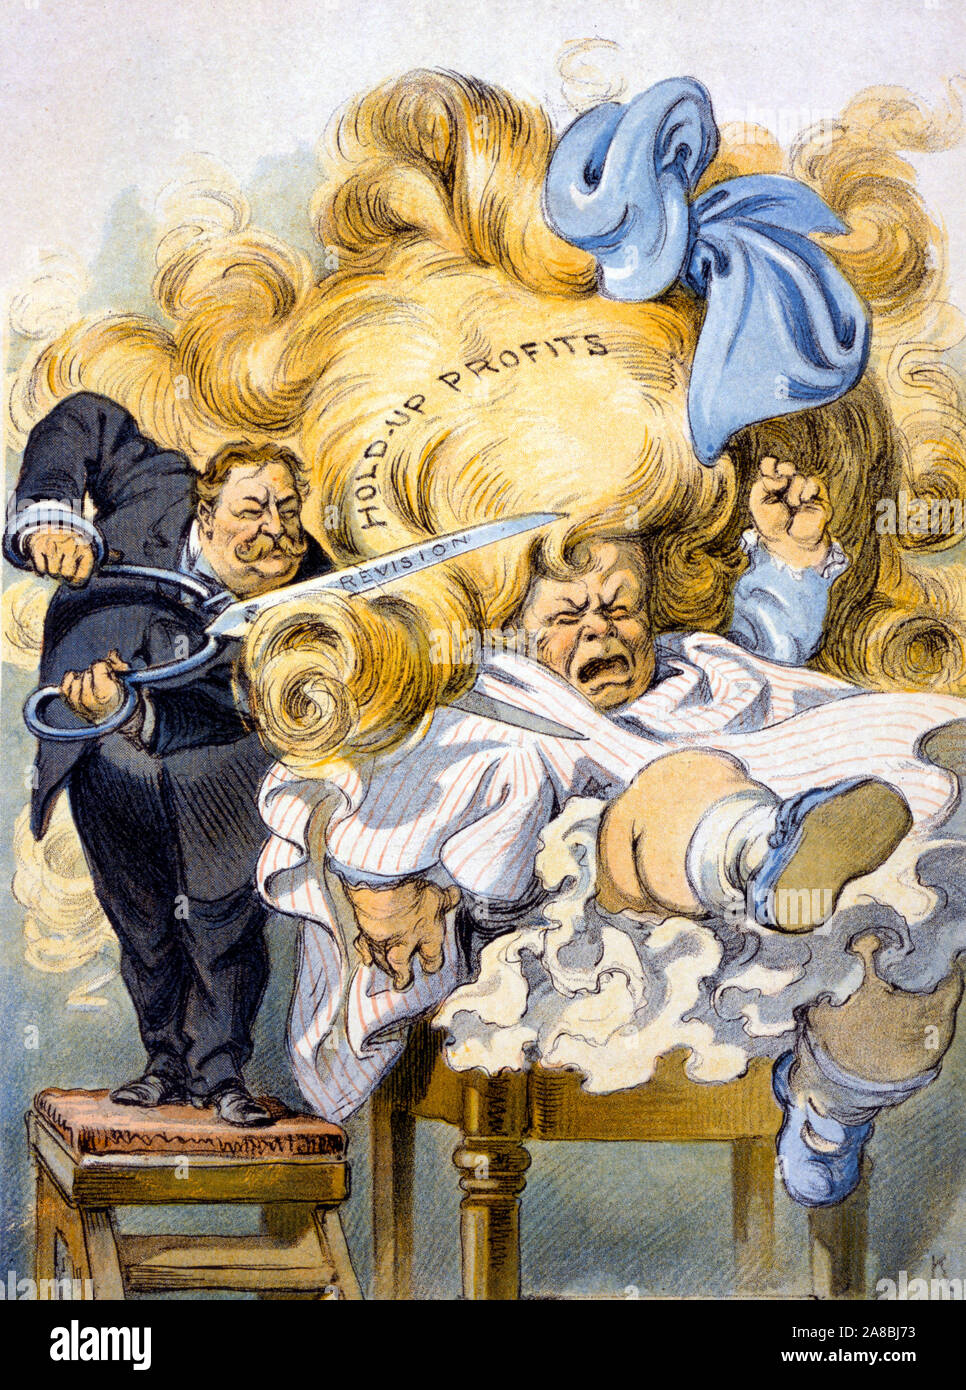 Le fraisage choyé darling - William Howard Taft, disant : 'Stop à coups de pied ! Je pourrais couper la tête !", il coupe des boucles longues 'hold-up des profits, à l'aide de ciseaux "vision." caricature politique, 1909 Banque D'Images